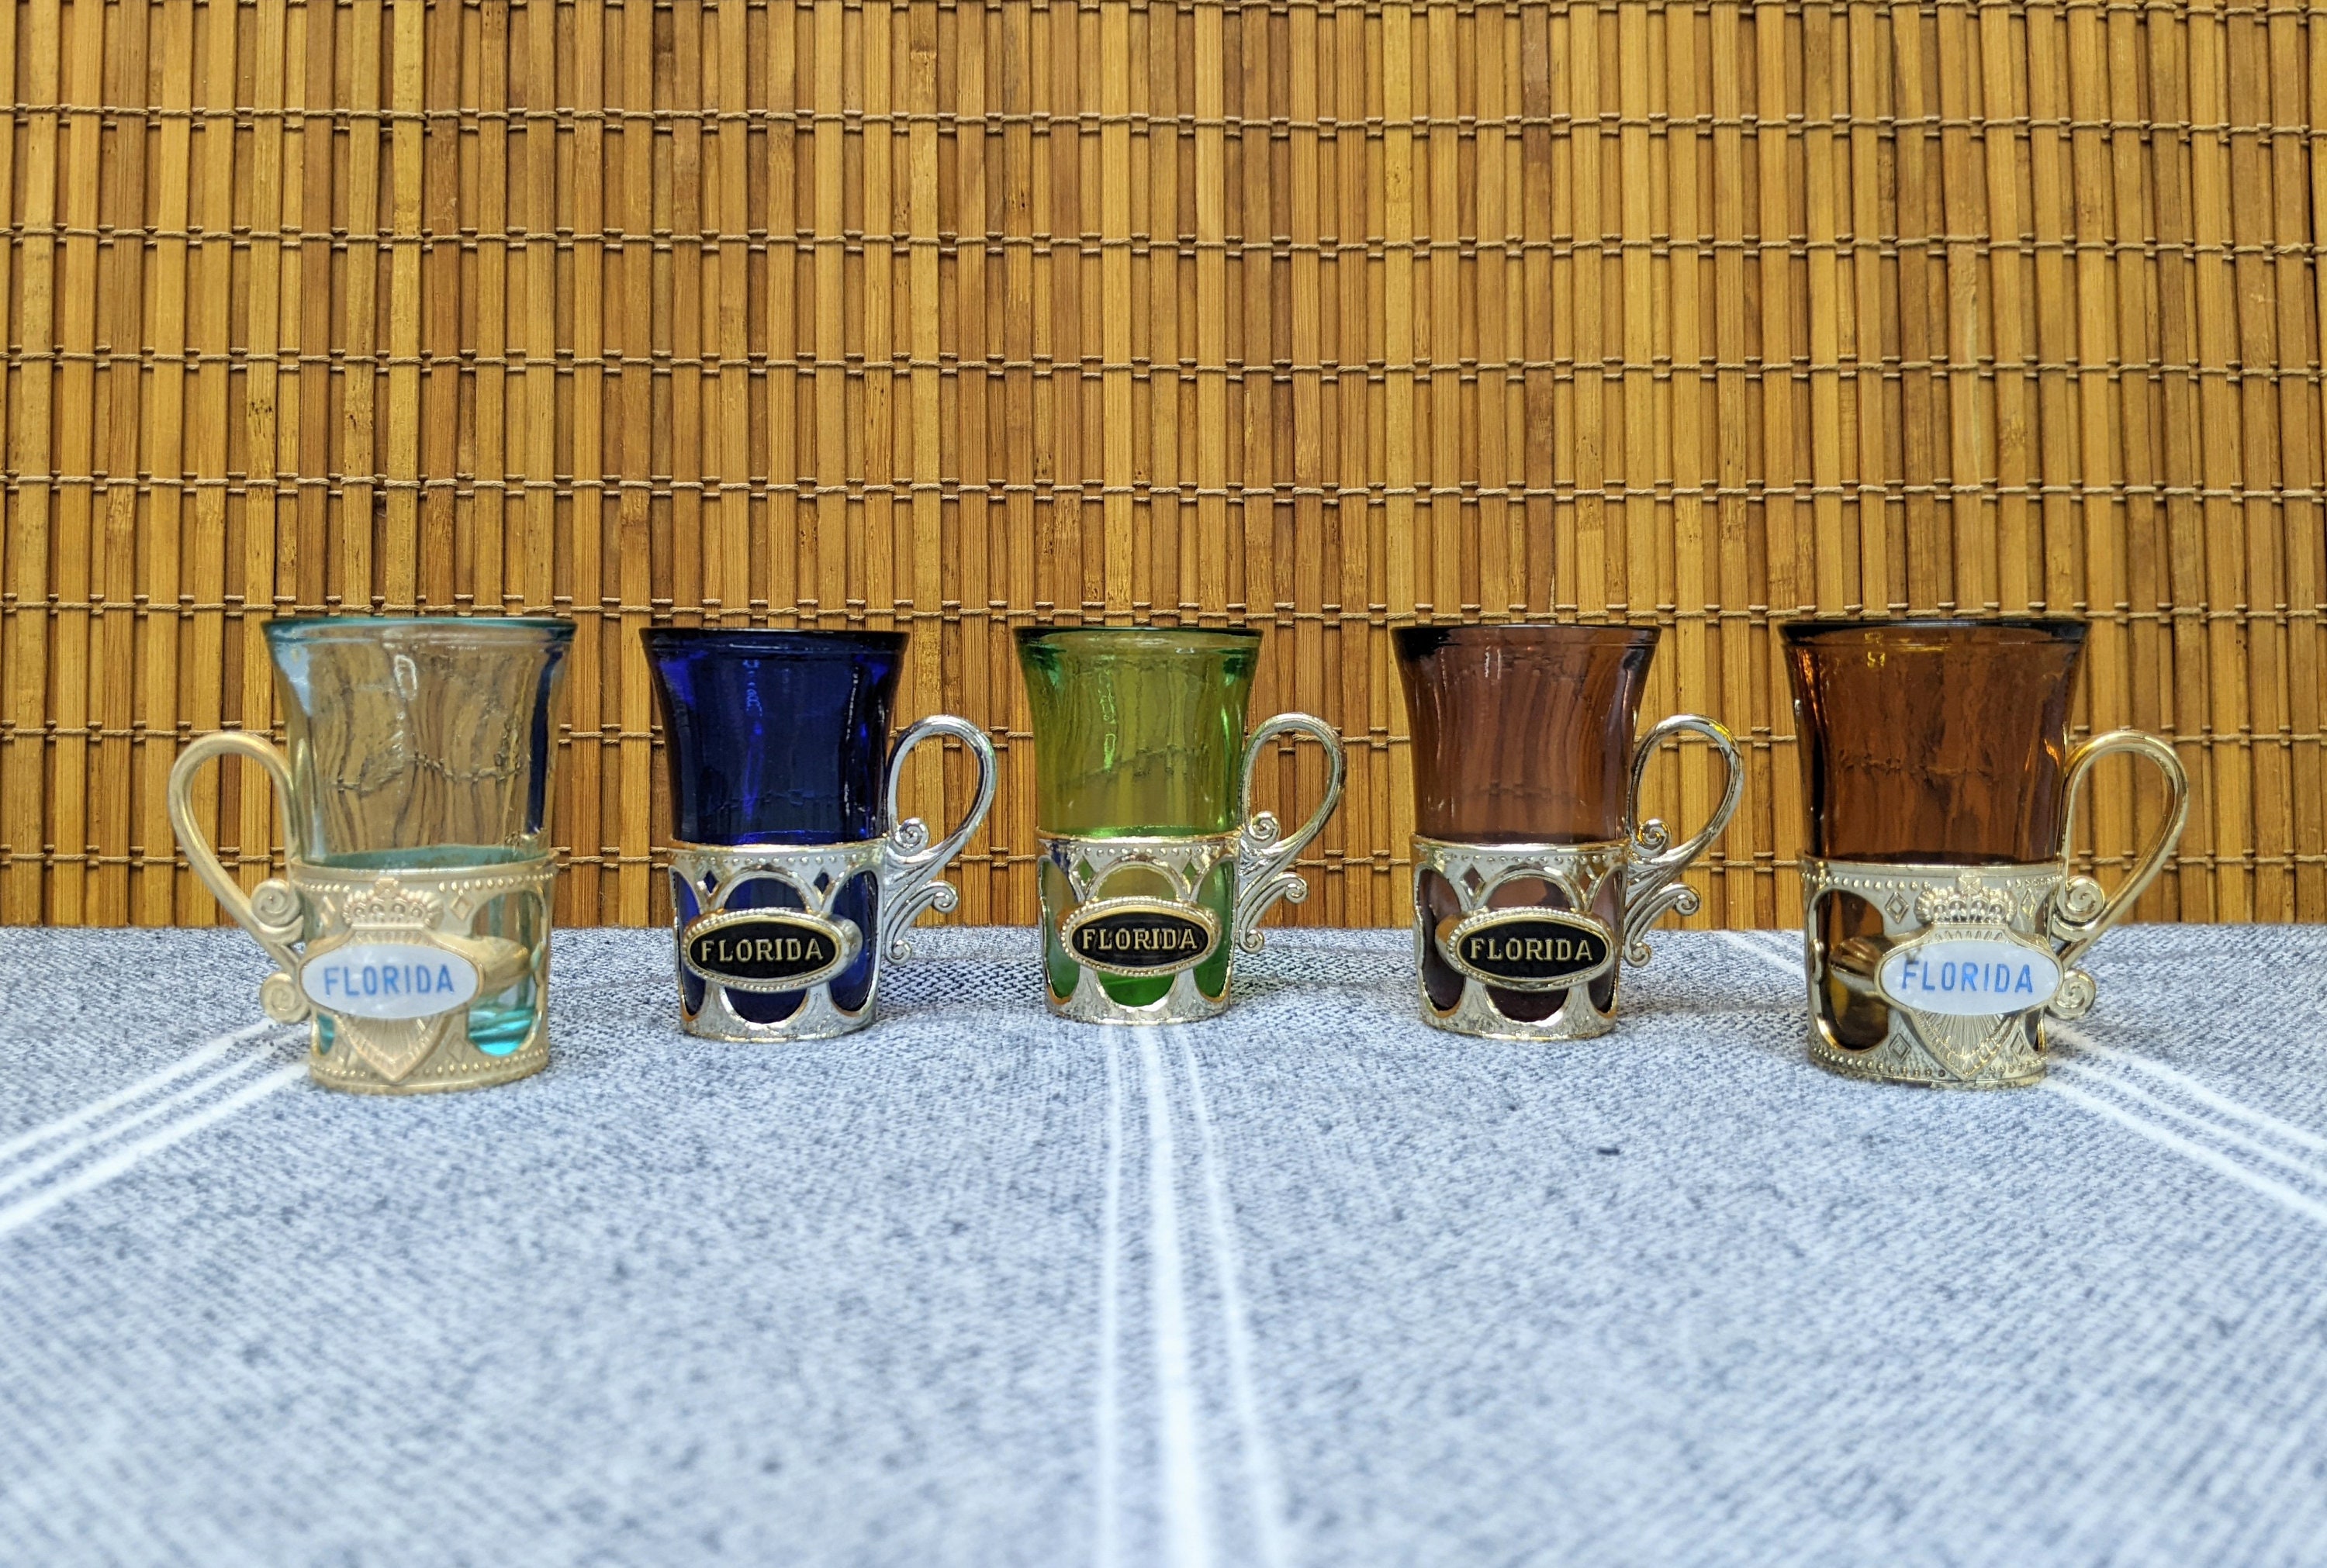 Set of 2 Japanese Style Handmade Shot Glasses Elegant Tea Glasses Flower  Petal Espresso Glasses 